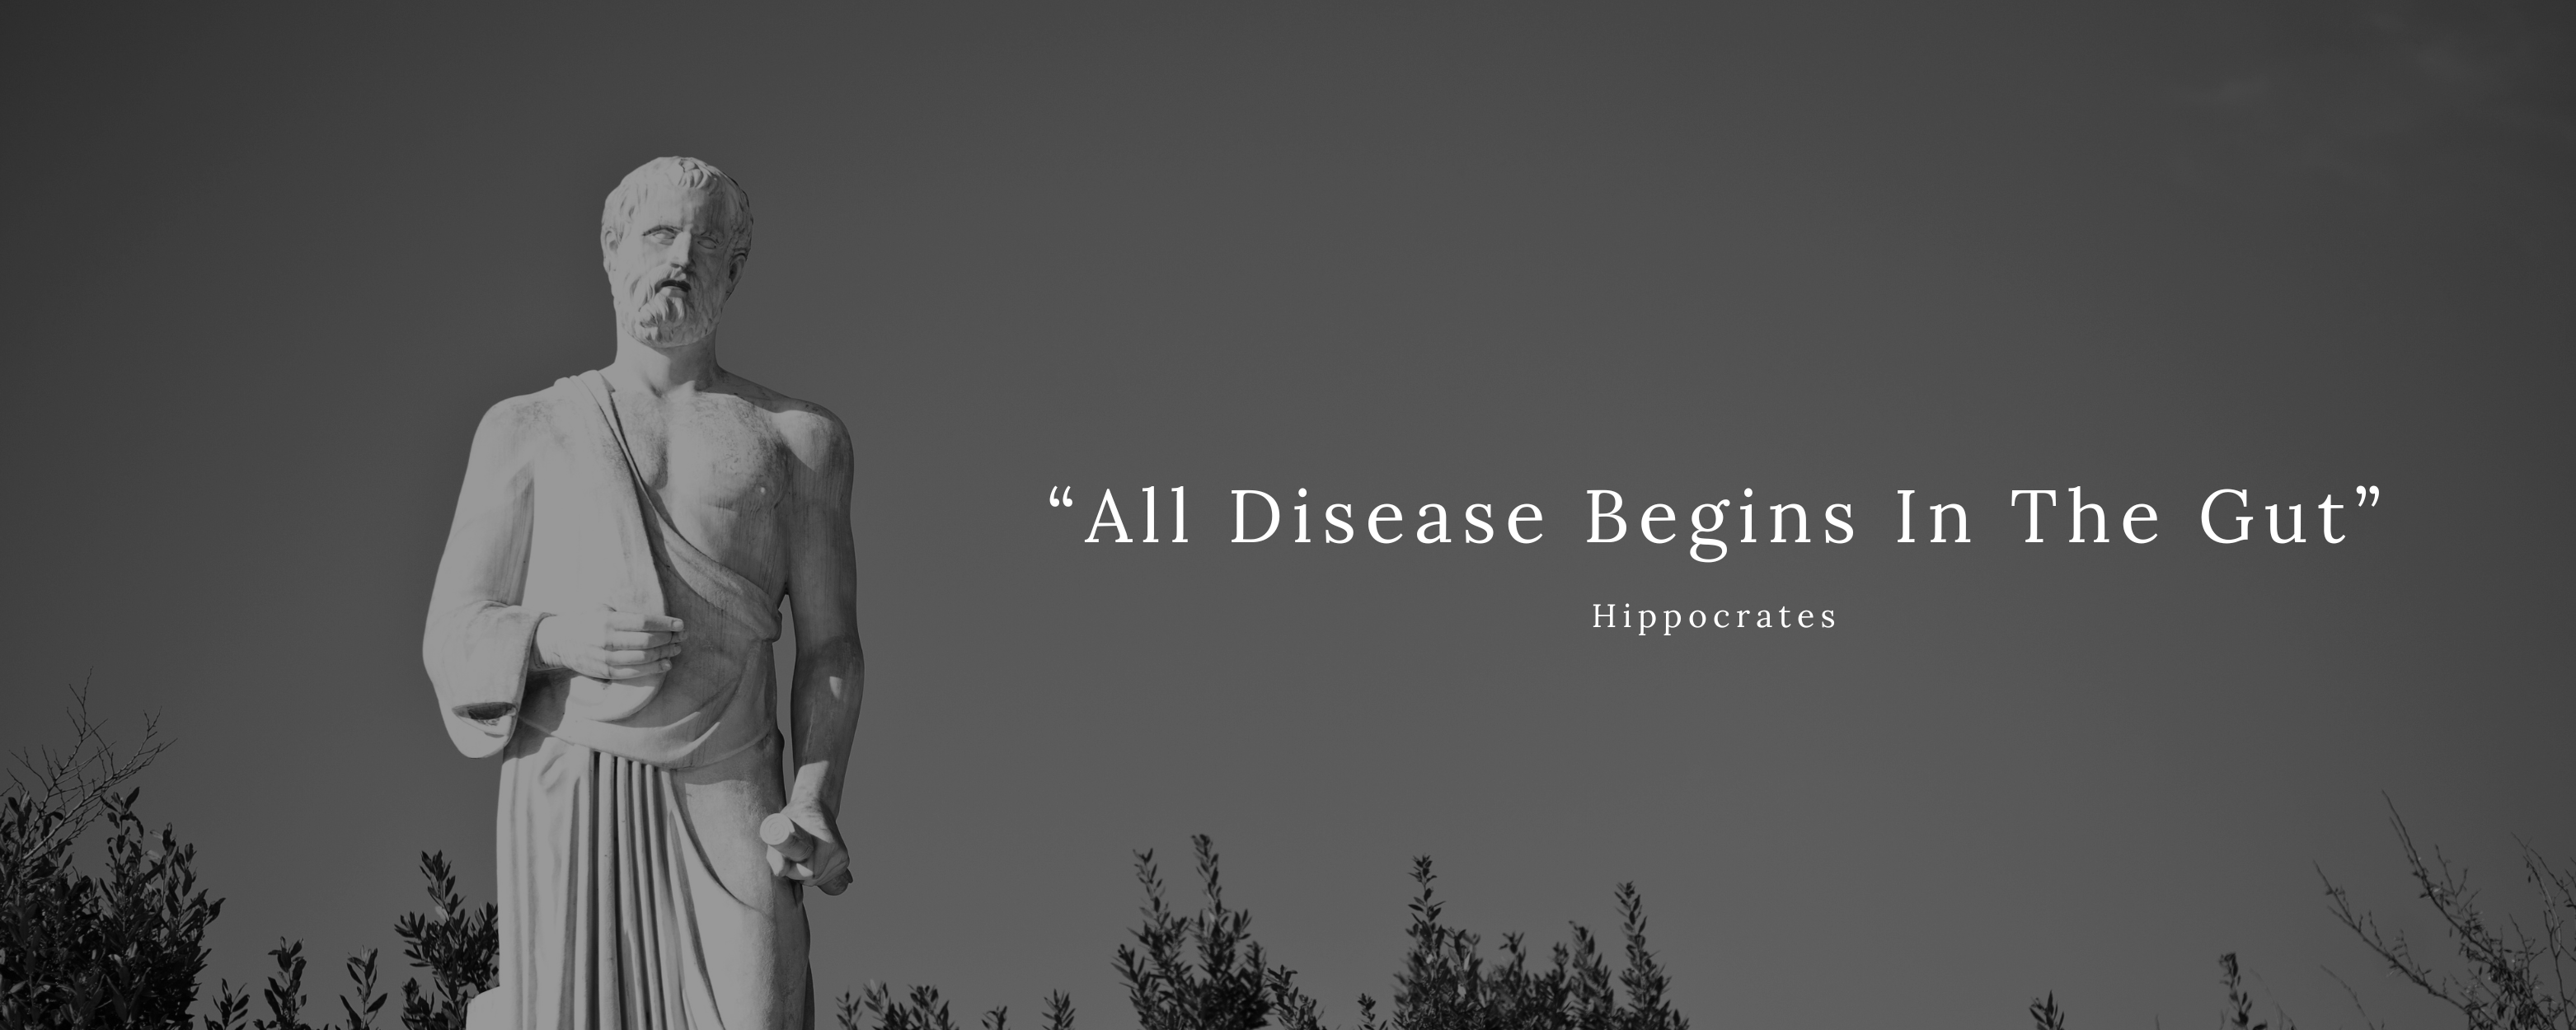 “All Disease Begins In The Gut”